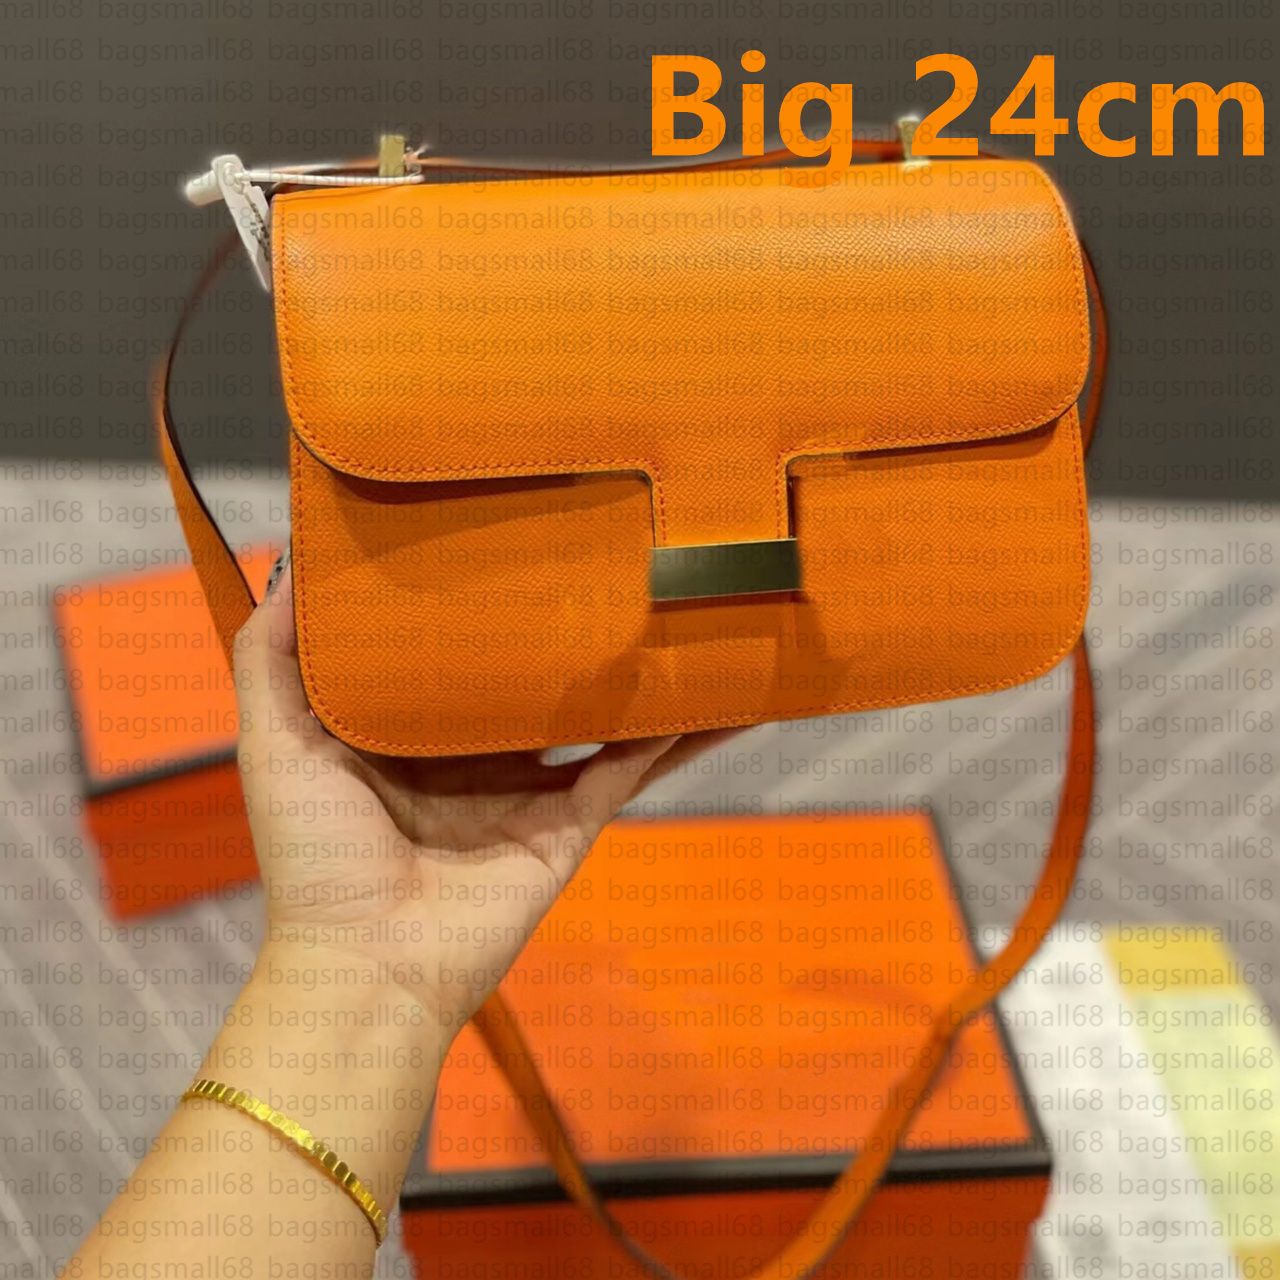 Büyük /24 cm turuncu